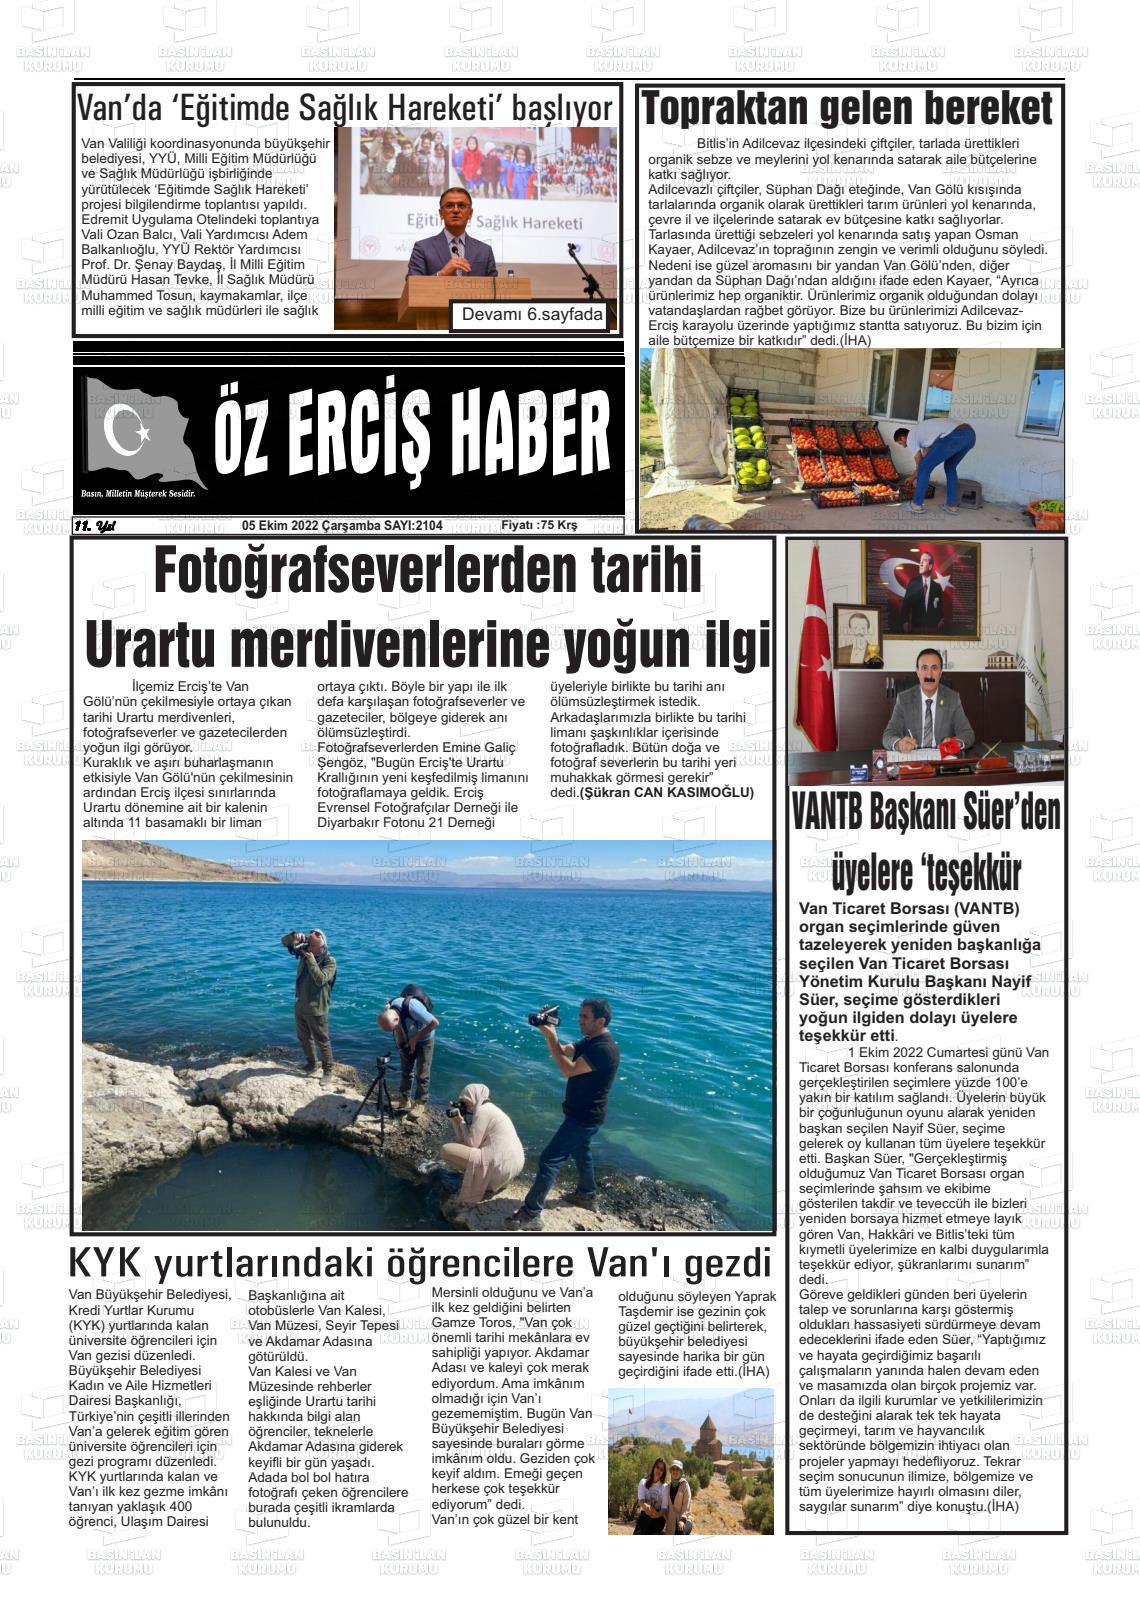 05 Ekim 2022 Öz Erciş Haber Gazete Manşeti